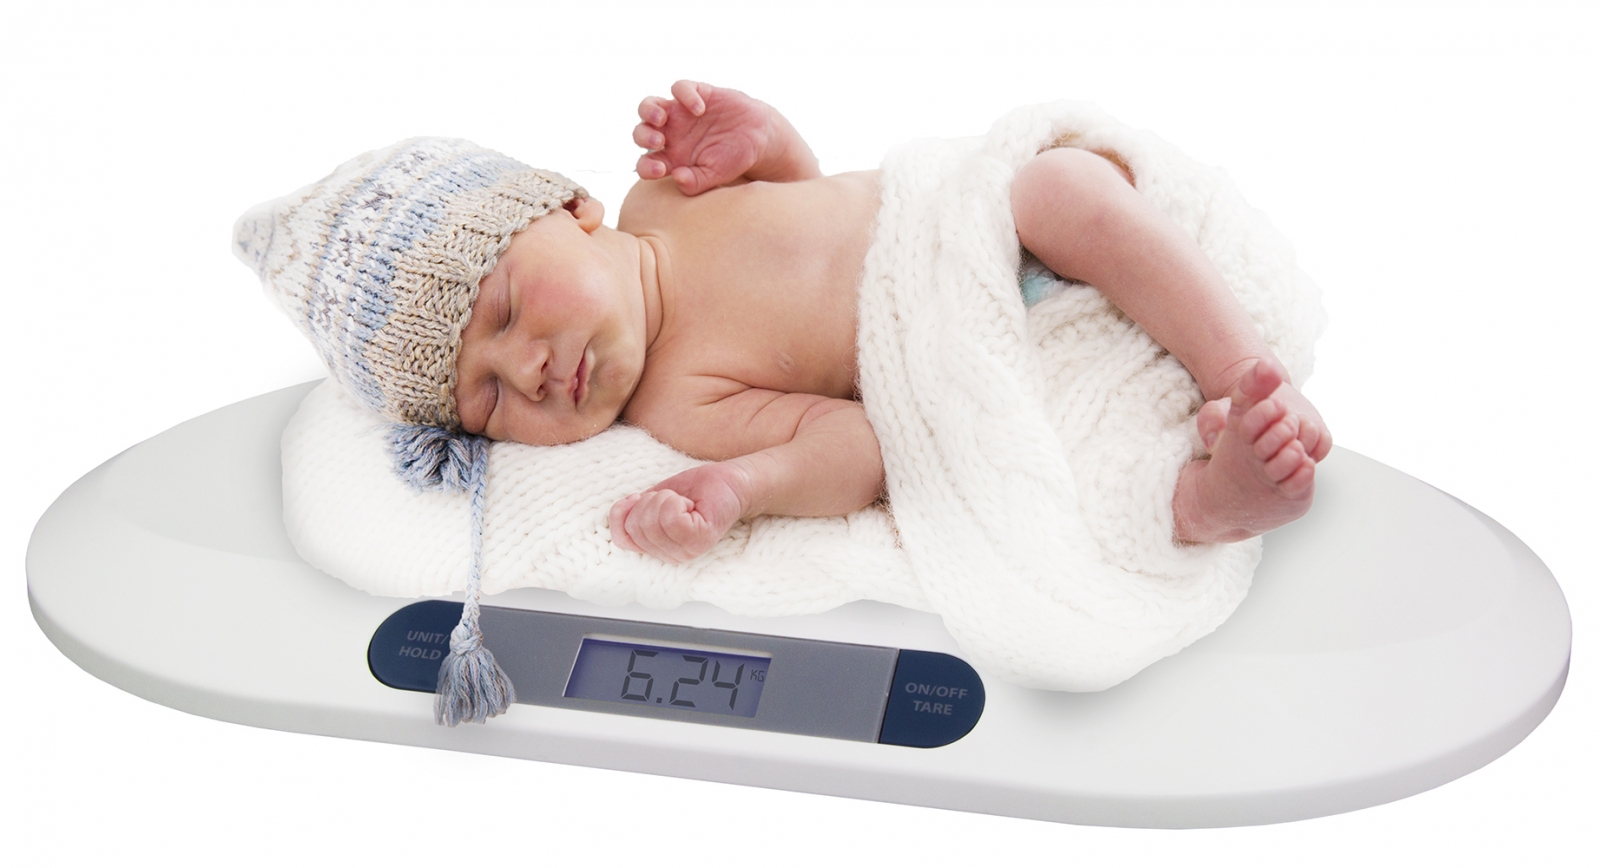 Cantar electronic pentru bebelusi cu ecran LCD si precizie la nivel de grame